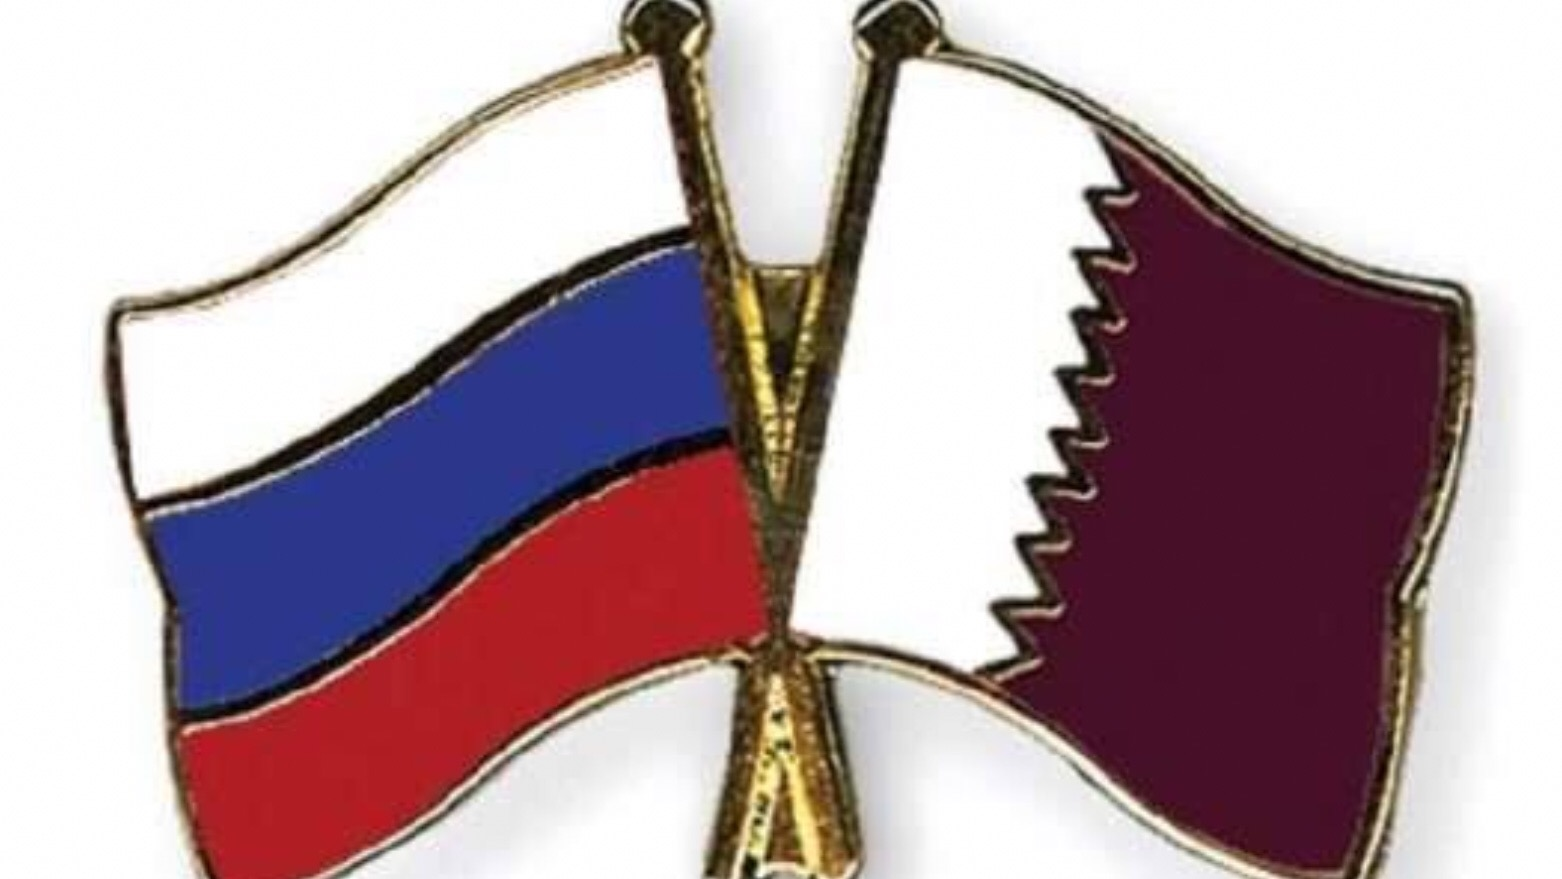 Rusya Katar’a da vizeleri kaldırdı, Türkiye hala beklemede